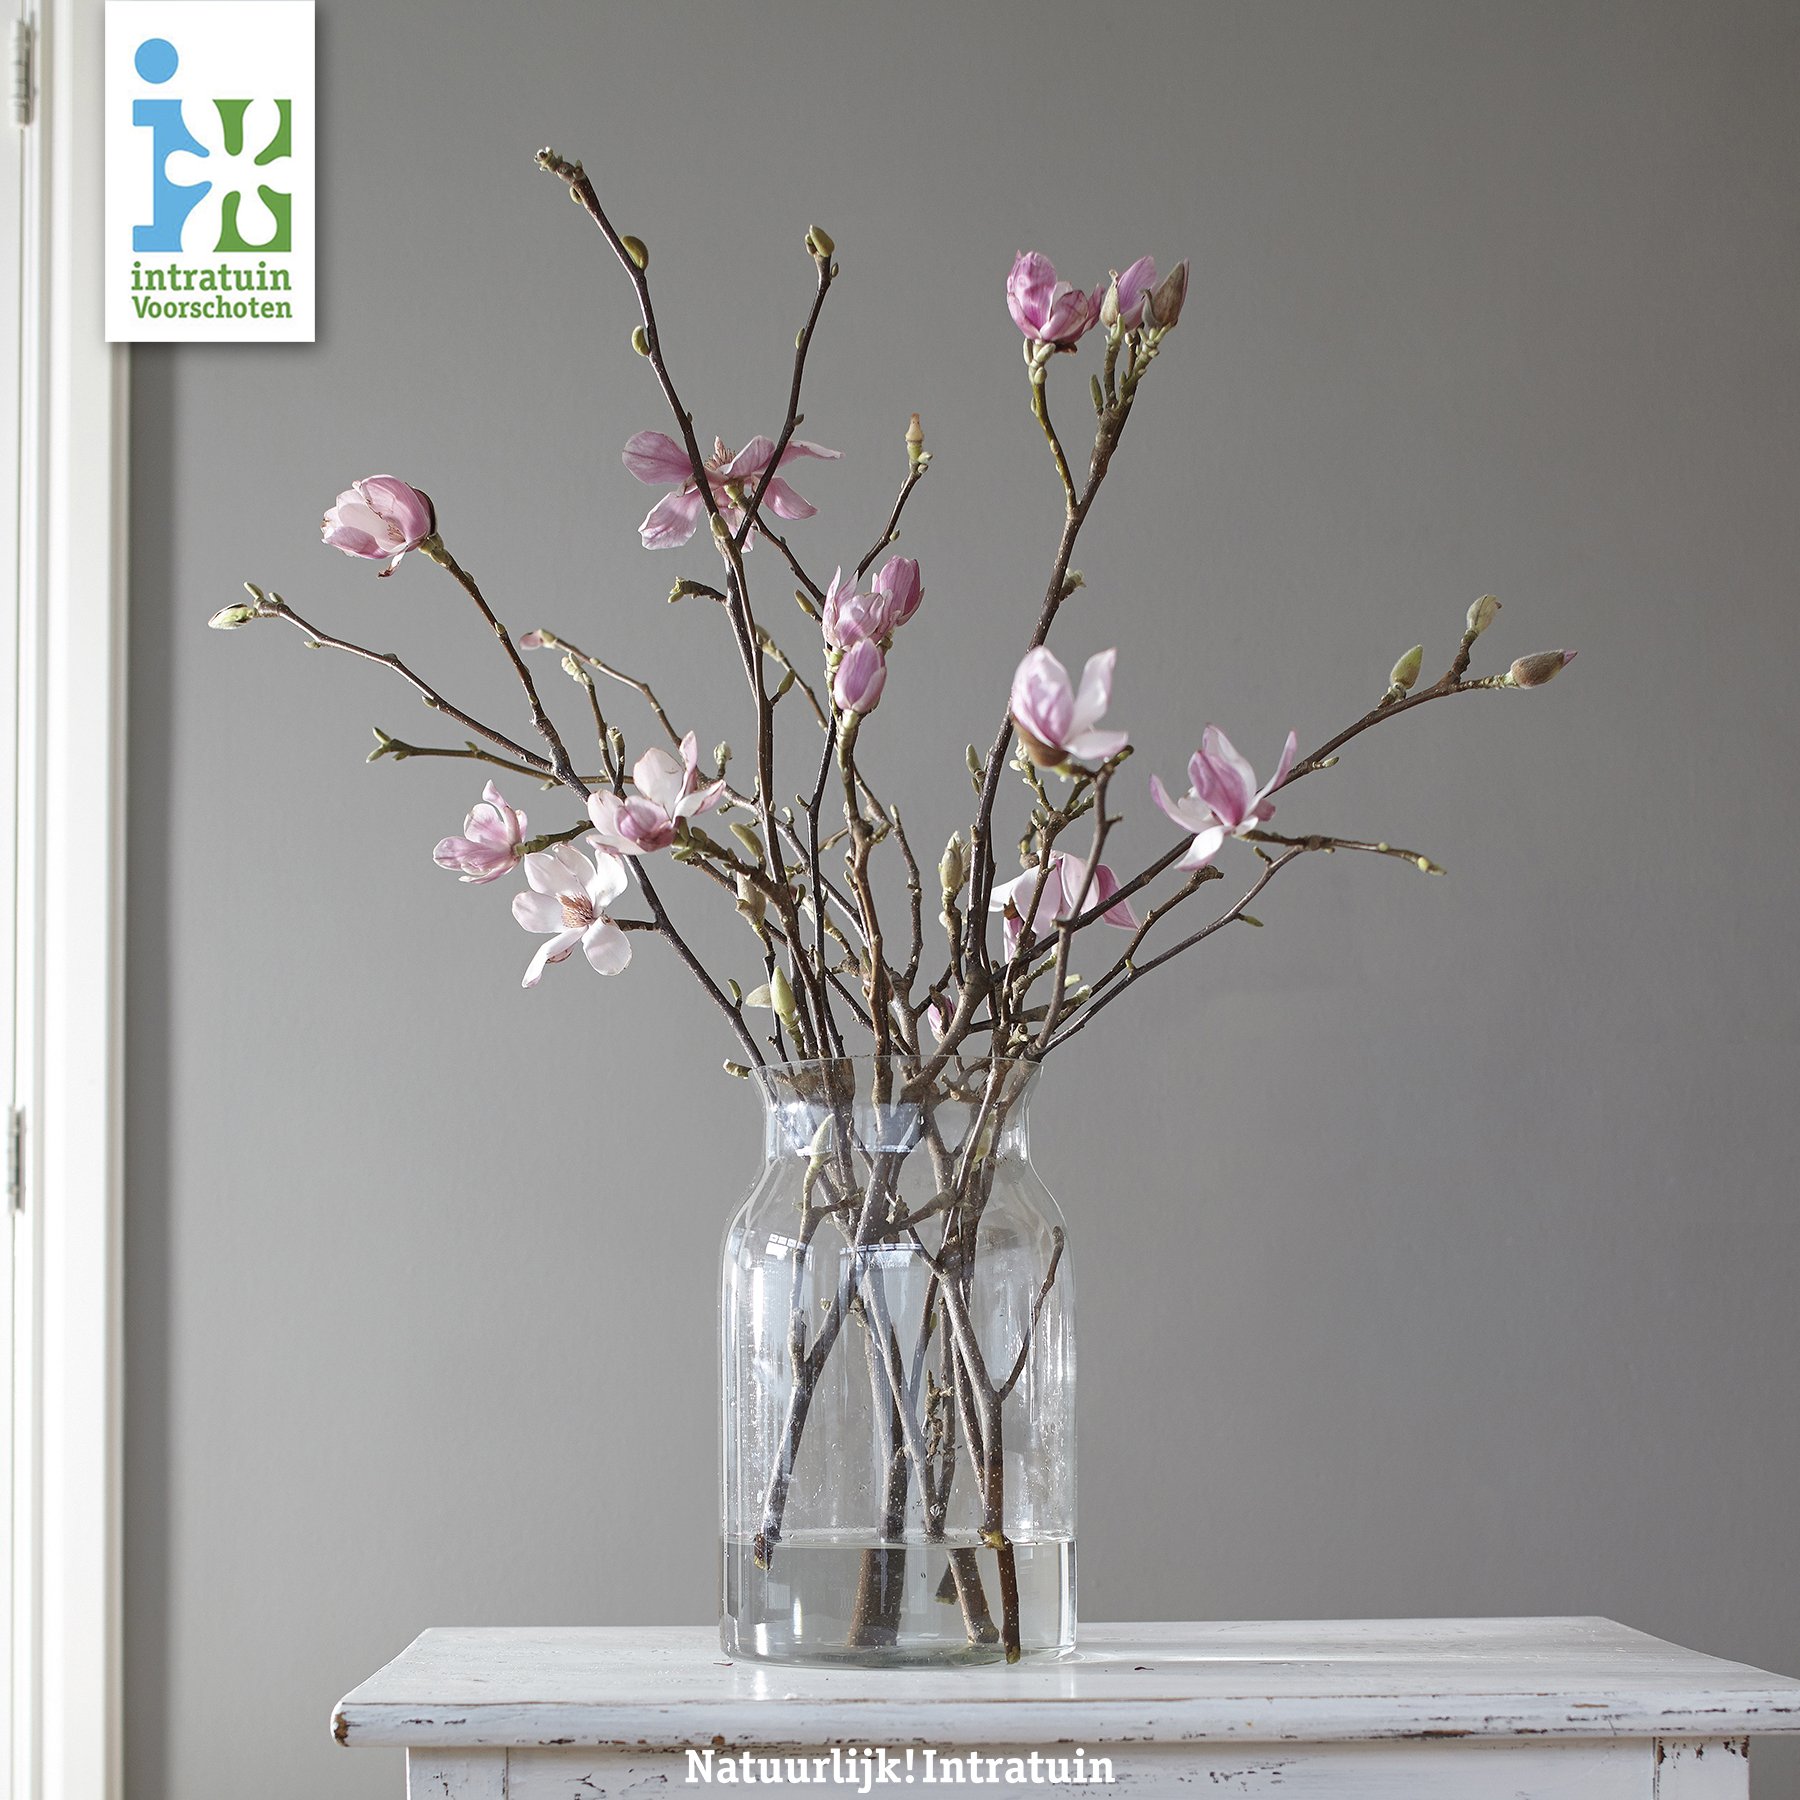 IntratuinVoorschoten on Twitter: "MAGNOLIA | Simpel maar zo mooi 😍 Wat vind jij? #magnolia #simpel #fleur #bloemen #takken #minimal https://t.co/kEQYgcNQ9n" Twitter